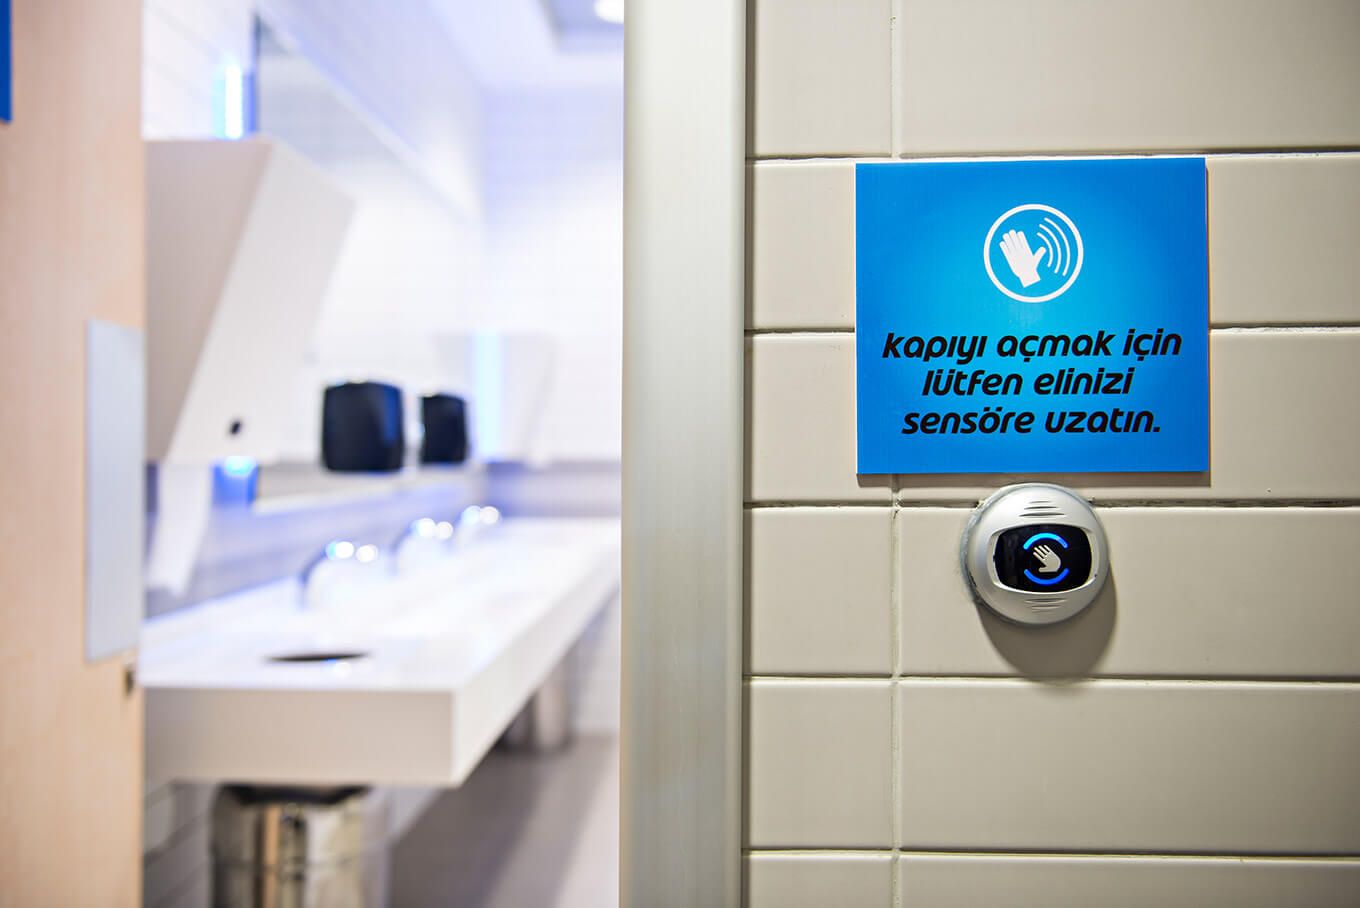  ‌ Автоматические раздвижные двери с инфракрасными бесконтактными датчиками активации дверей обеспечивают удобный доступ в туалет